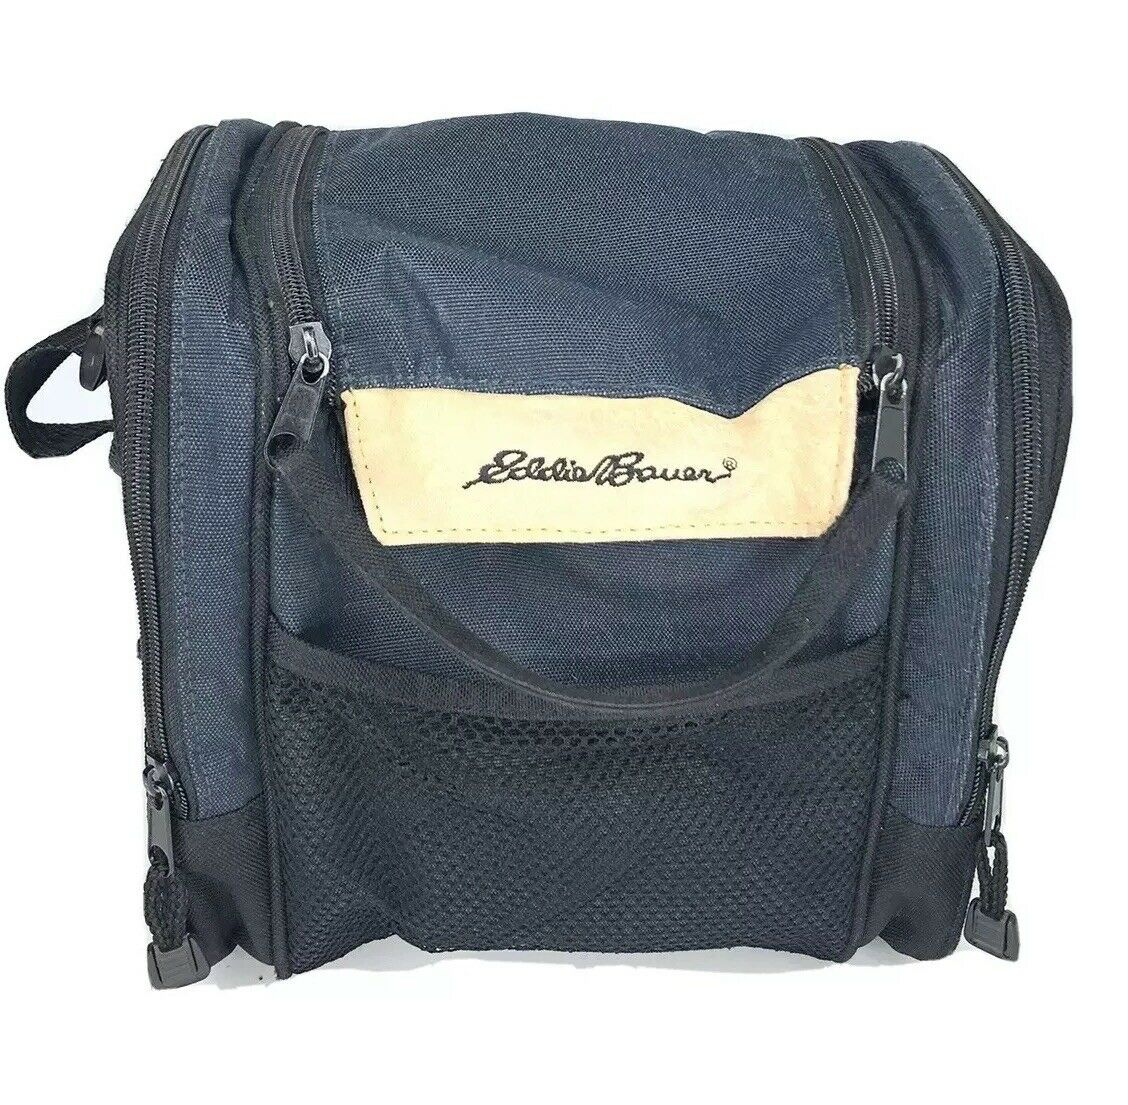 Eddie Bauer Toiletry Bag Shoulder Bag Shaving Kit Bag Traveling Travel Bag A1d